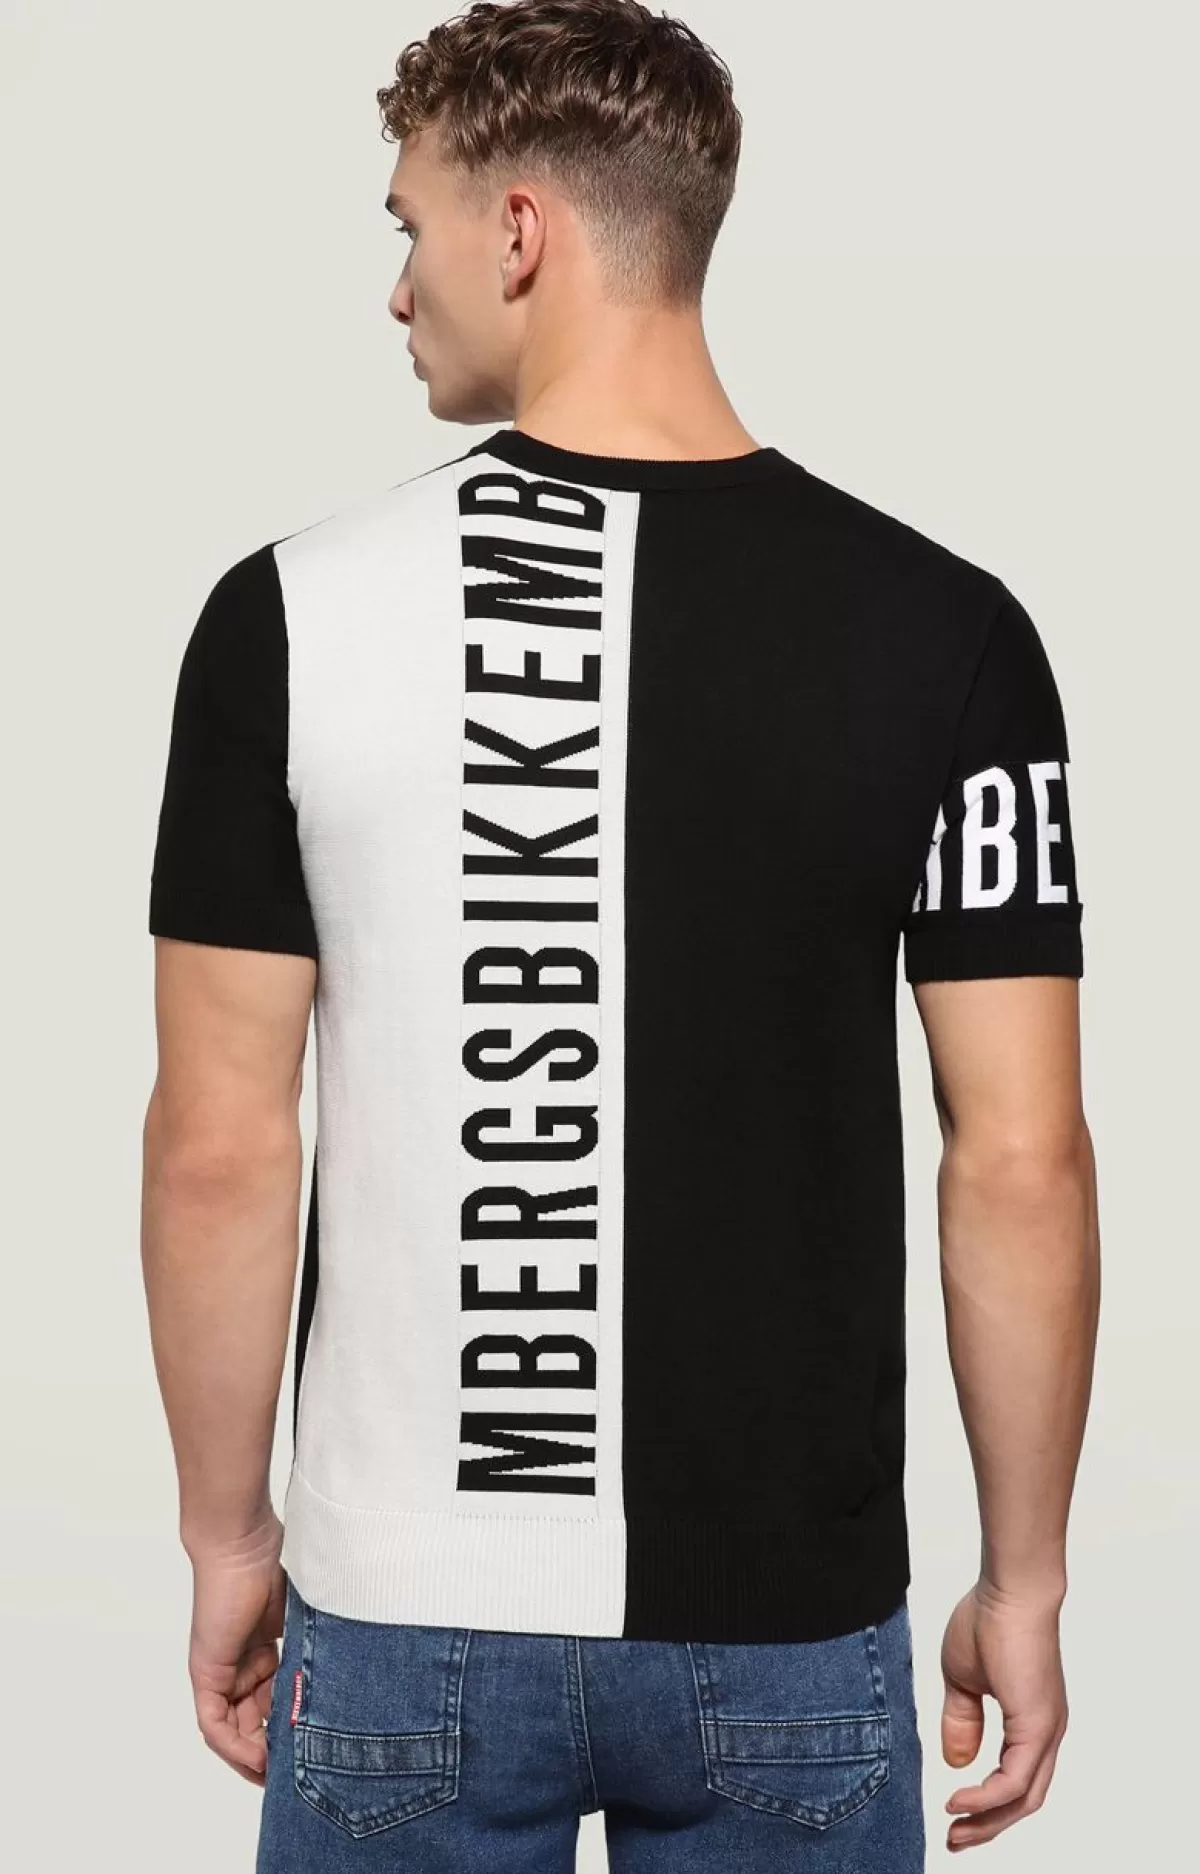 Bikkembergs Men'S Short Sleeved Sweater Black/Grey/White Cheap